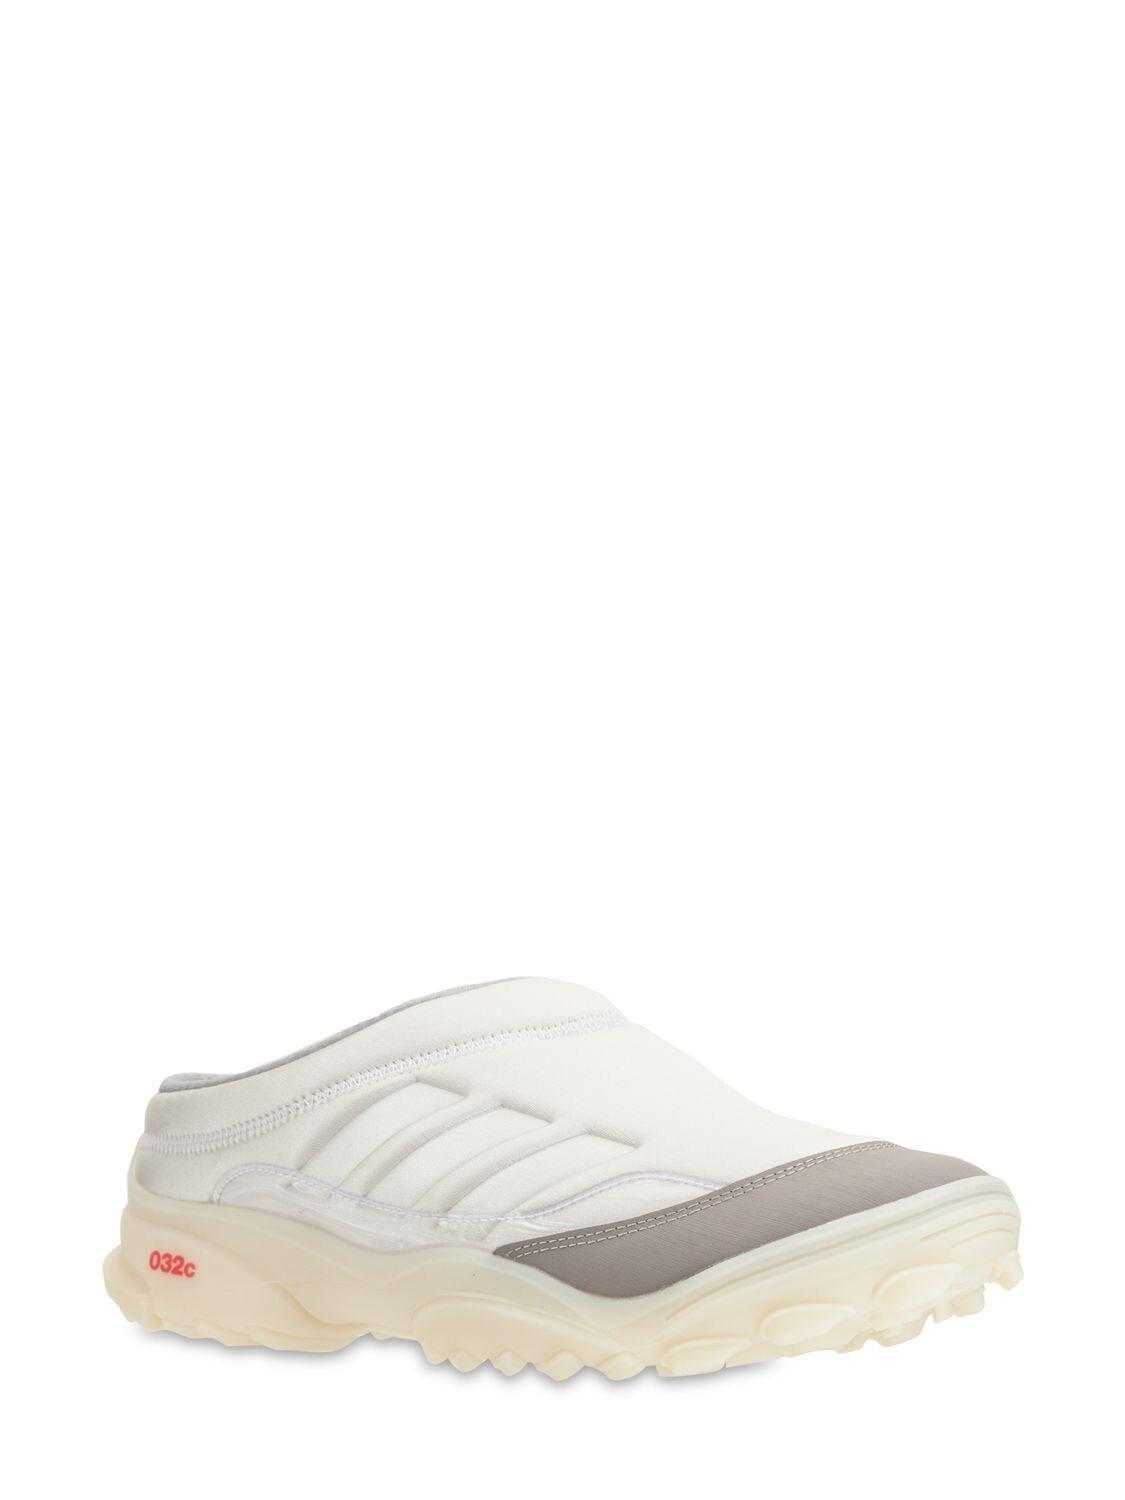 adidas Originals 032c Csg Mule Sneakers in Gray for Men | Lyst